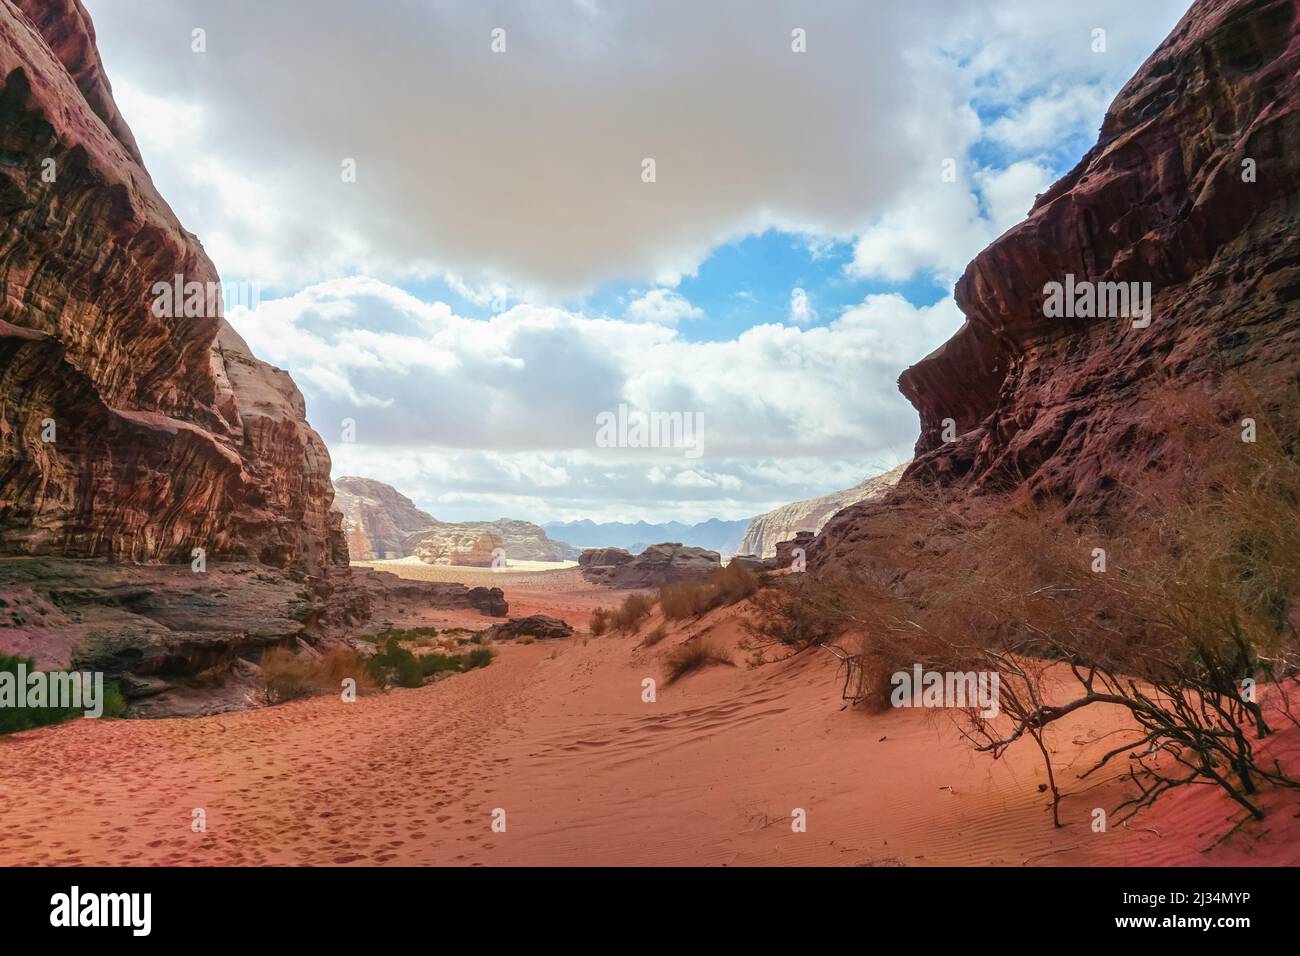 Canyon roccioso con sabbia rossa sulla terra, cielo blu in lontananza - scenario Wadi Rum Foto Stock